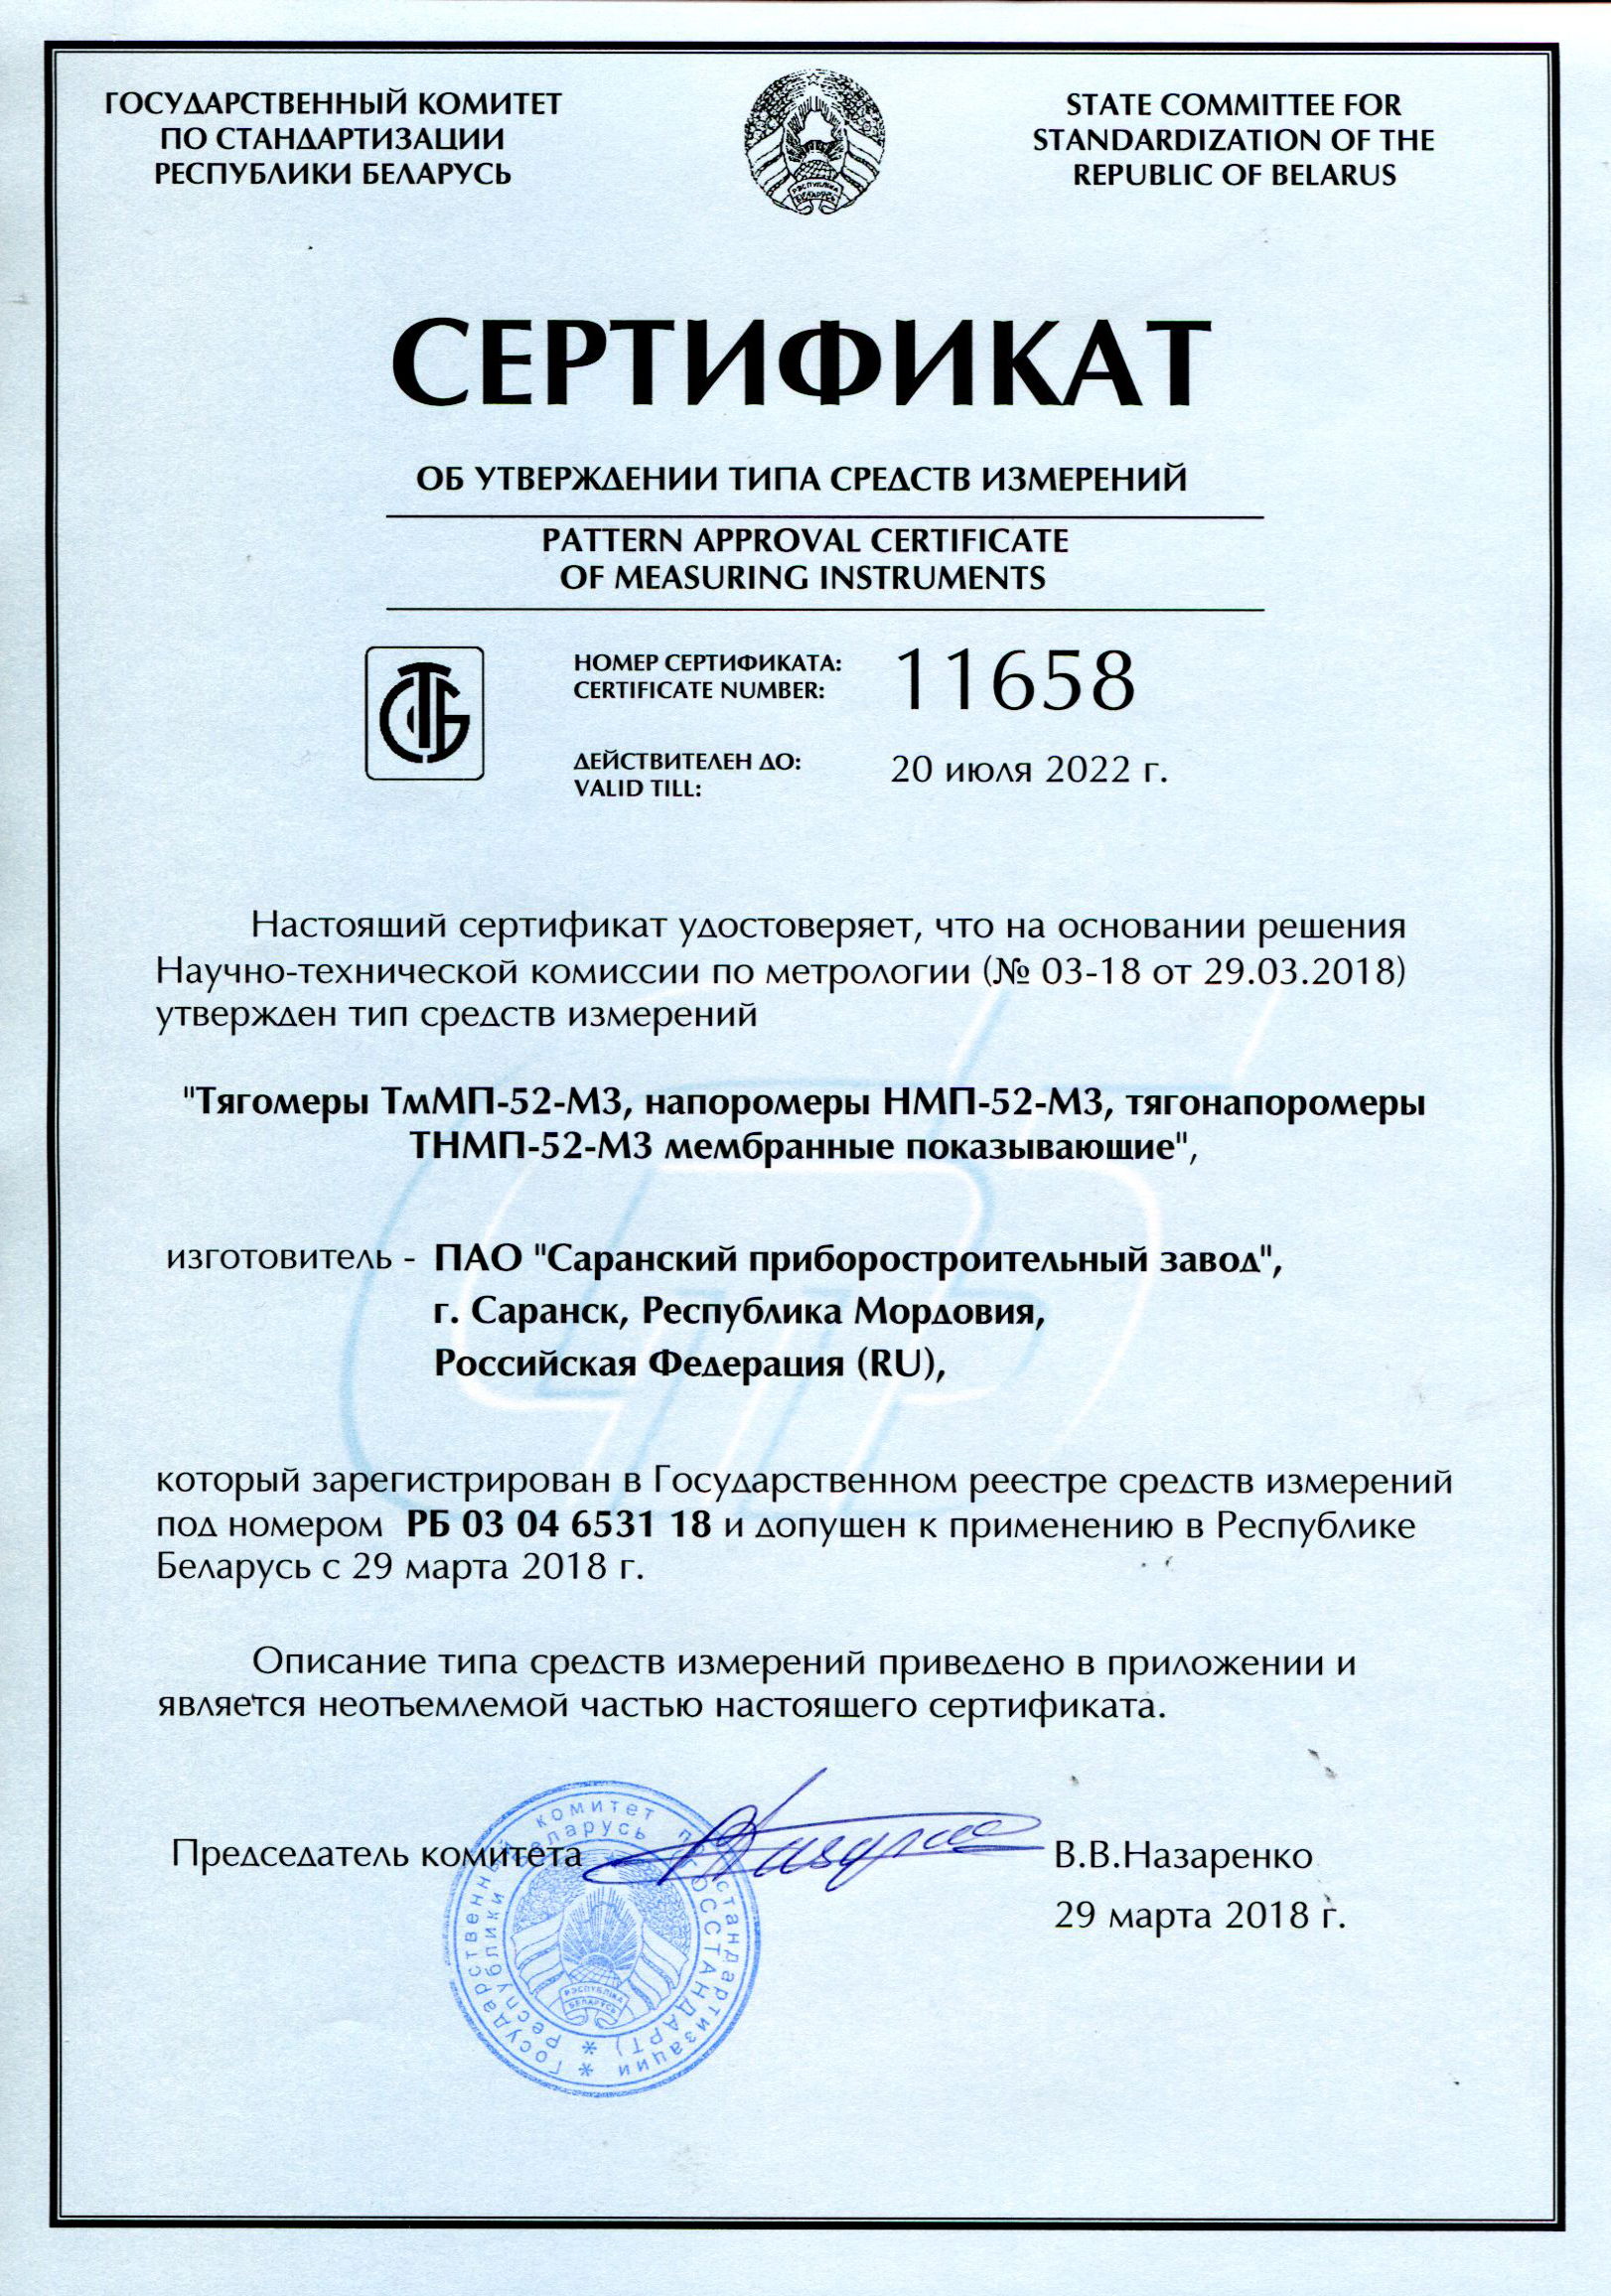 Изображение Сертификата об утверждении типа средств измерений напоромеров НМП-52-М3, тягомеров ТмМП-52-М3, тягонапоромеров ТНМП-52-М3 мембранных показывающих